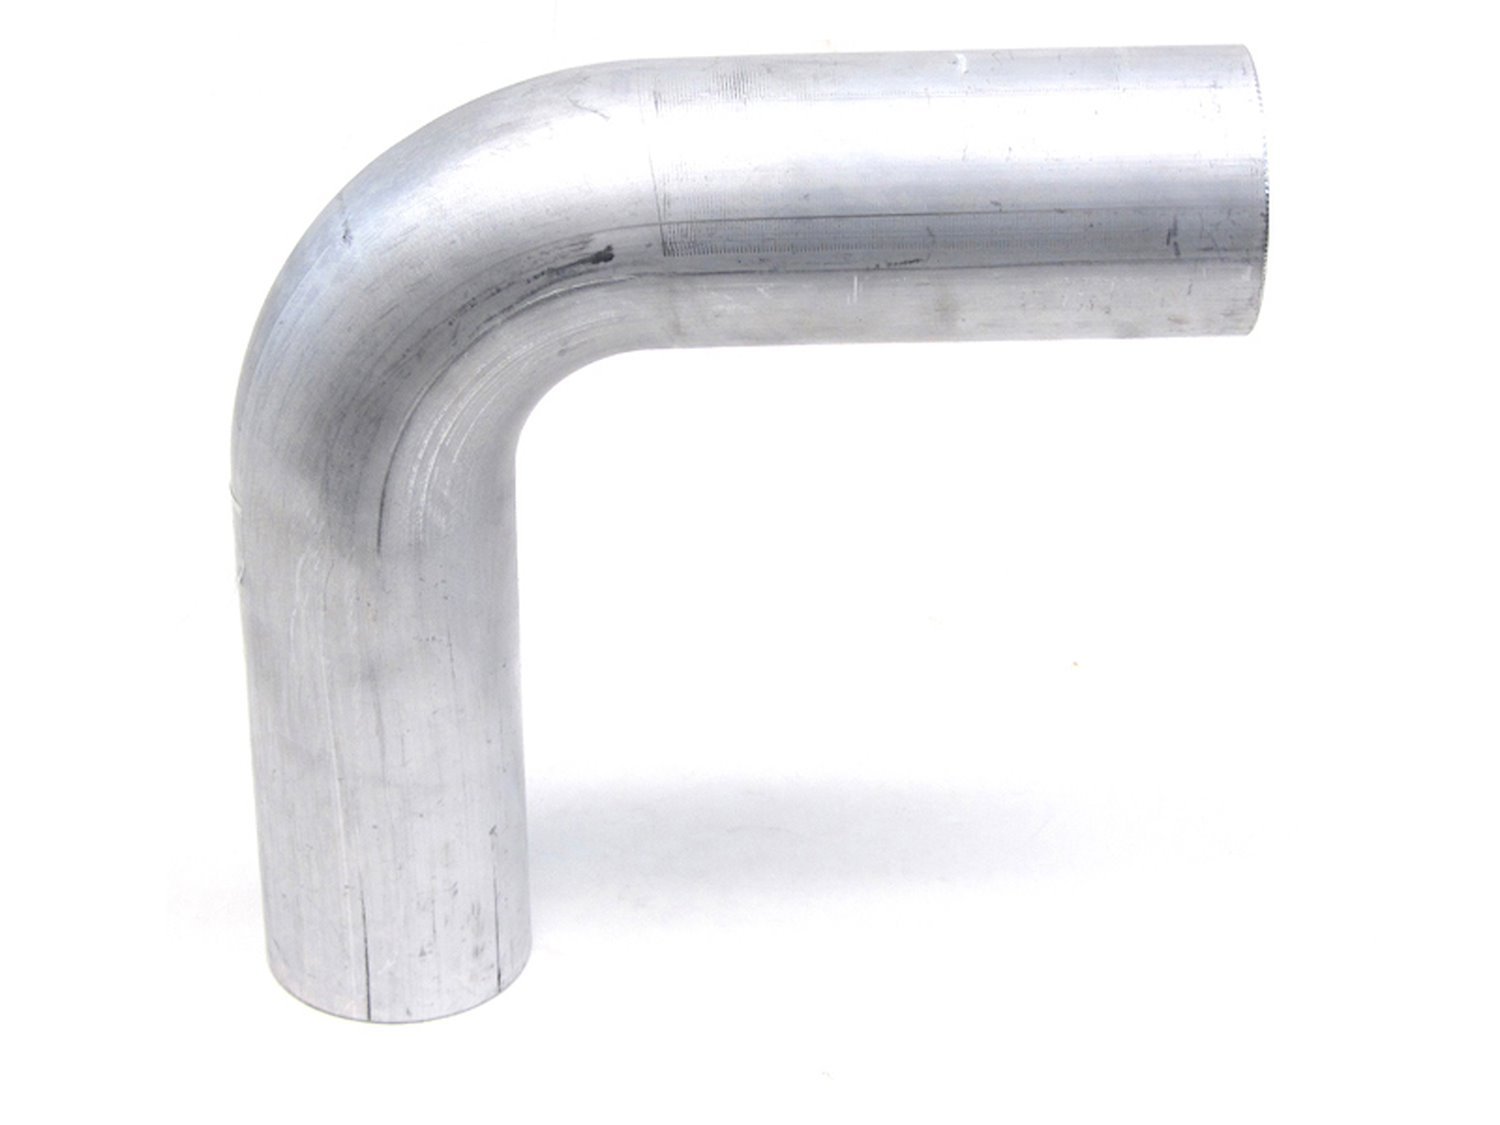 AT90-250-CLR-25 Aluminum Elbow Tube, 6061 Aluminum, 90-Degree Bend Elbow Tubing, 2-1/2 in. OD, Tight Radius, 2-1/2 in. CLR